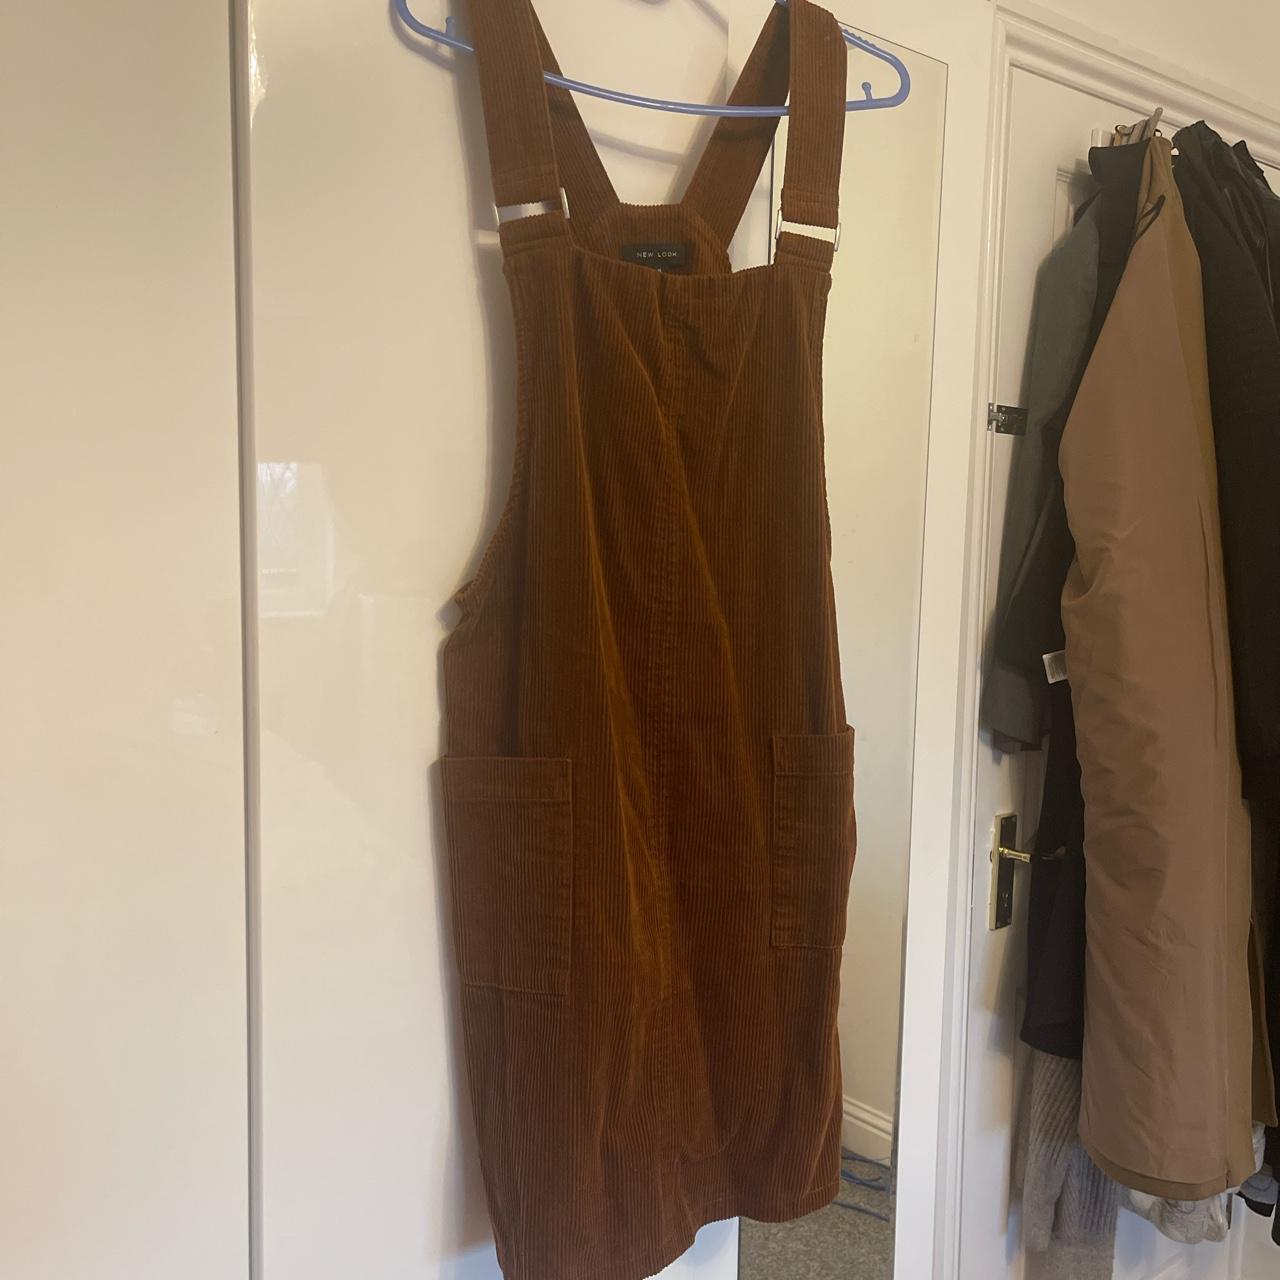 New Look corduroy dungaree dress in rust, size 12.... - Depop